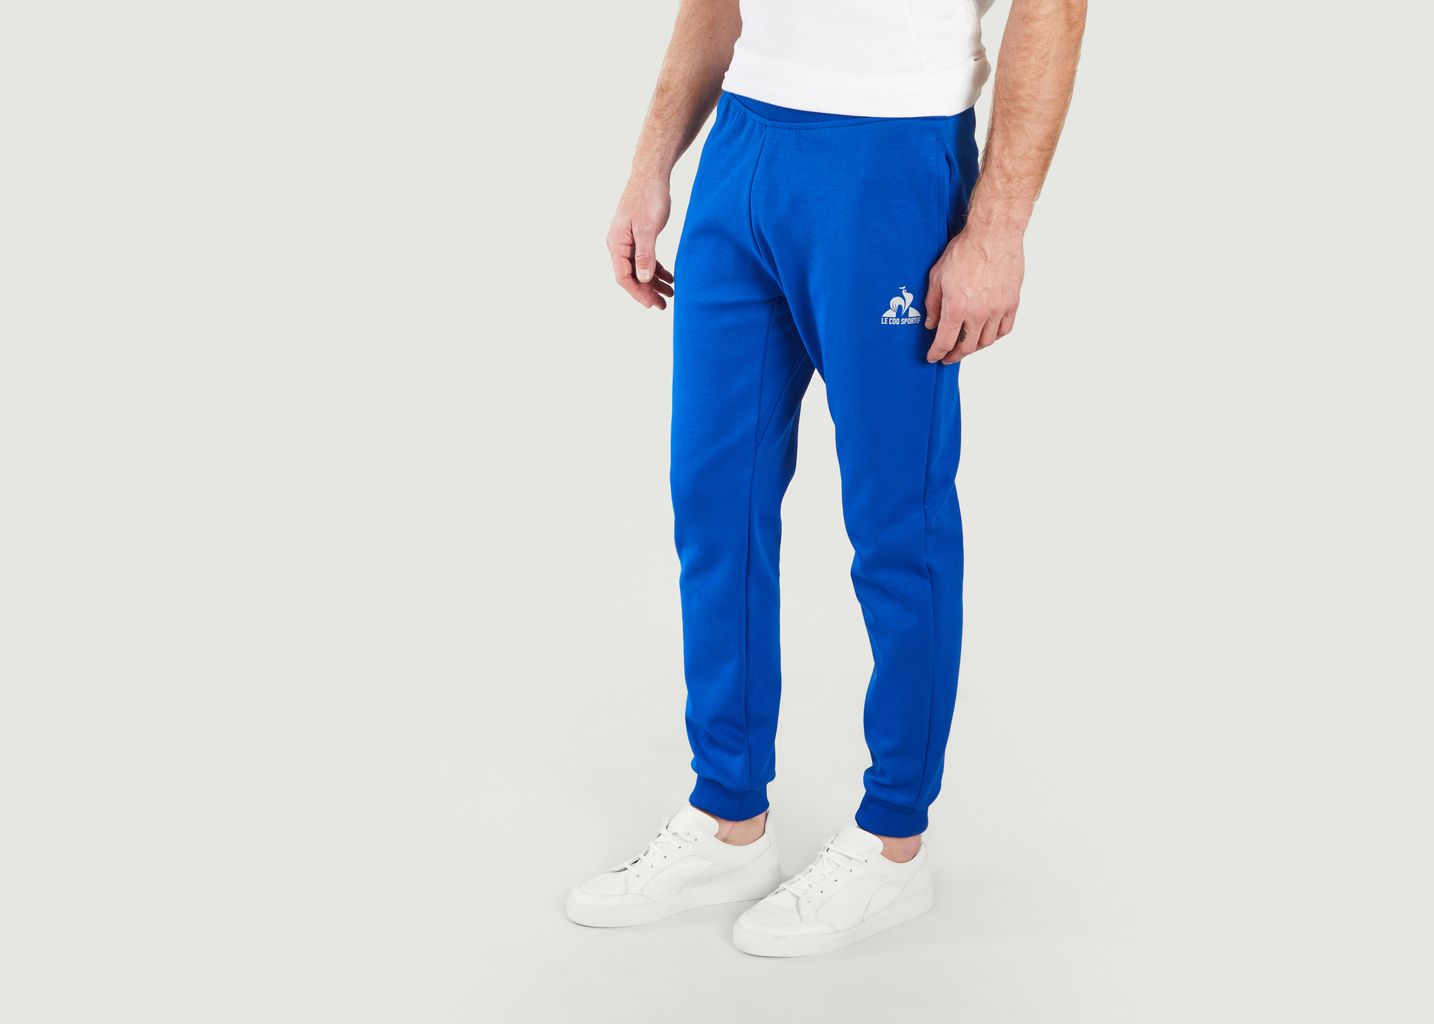 Pantalon survêtement Bleu Le Coq Sportif